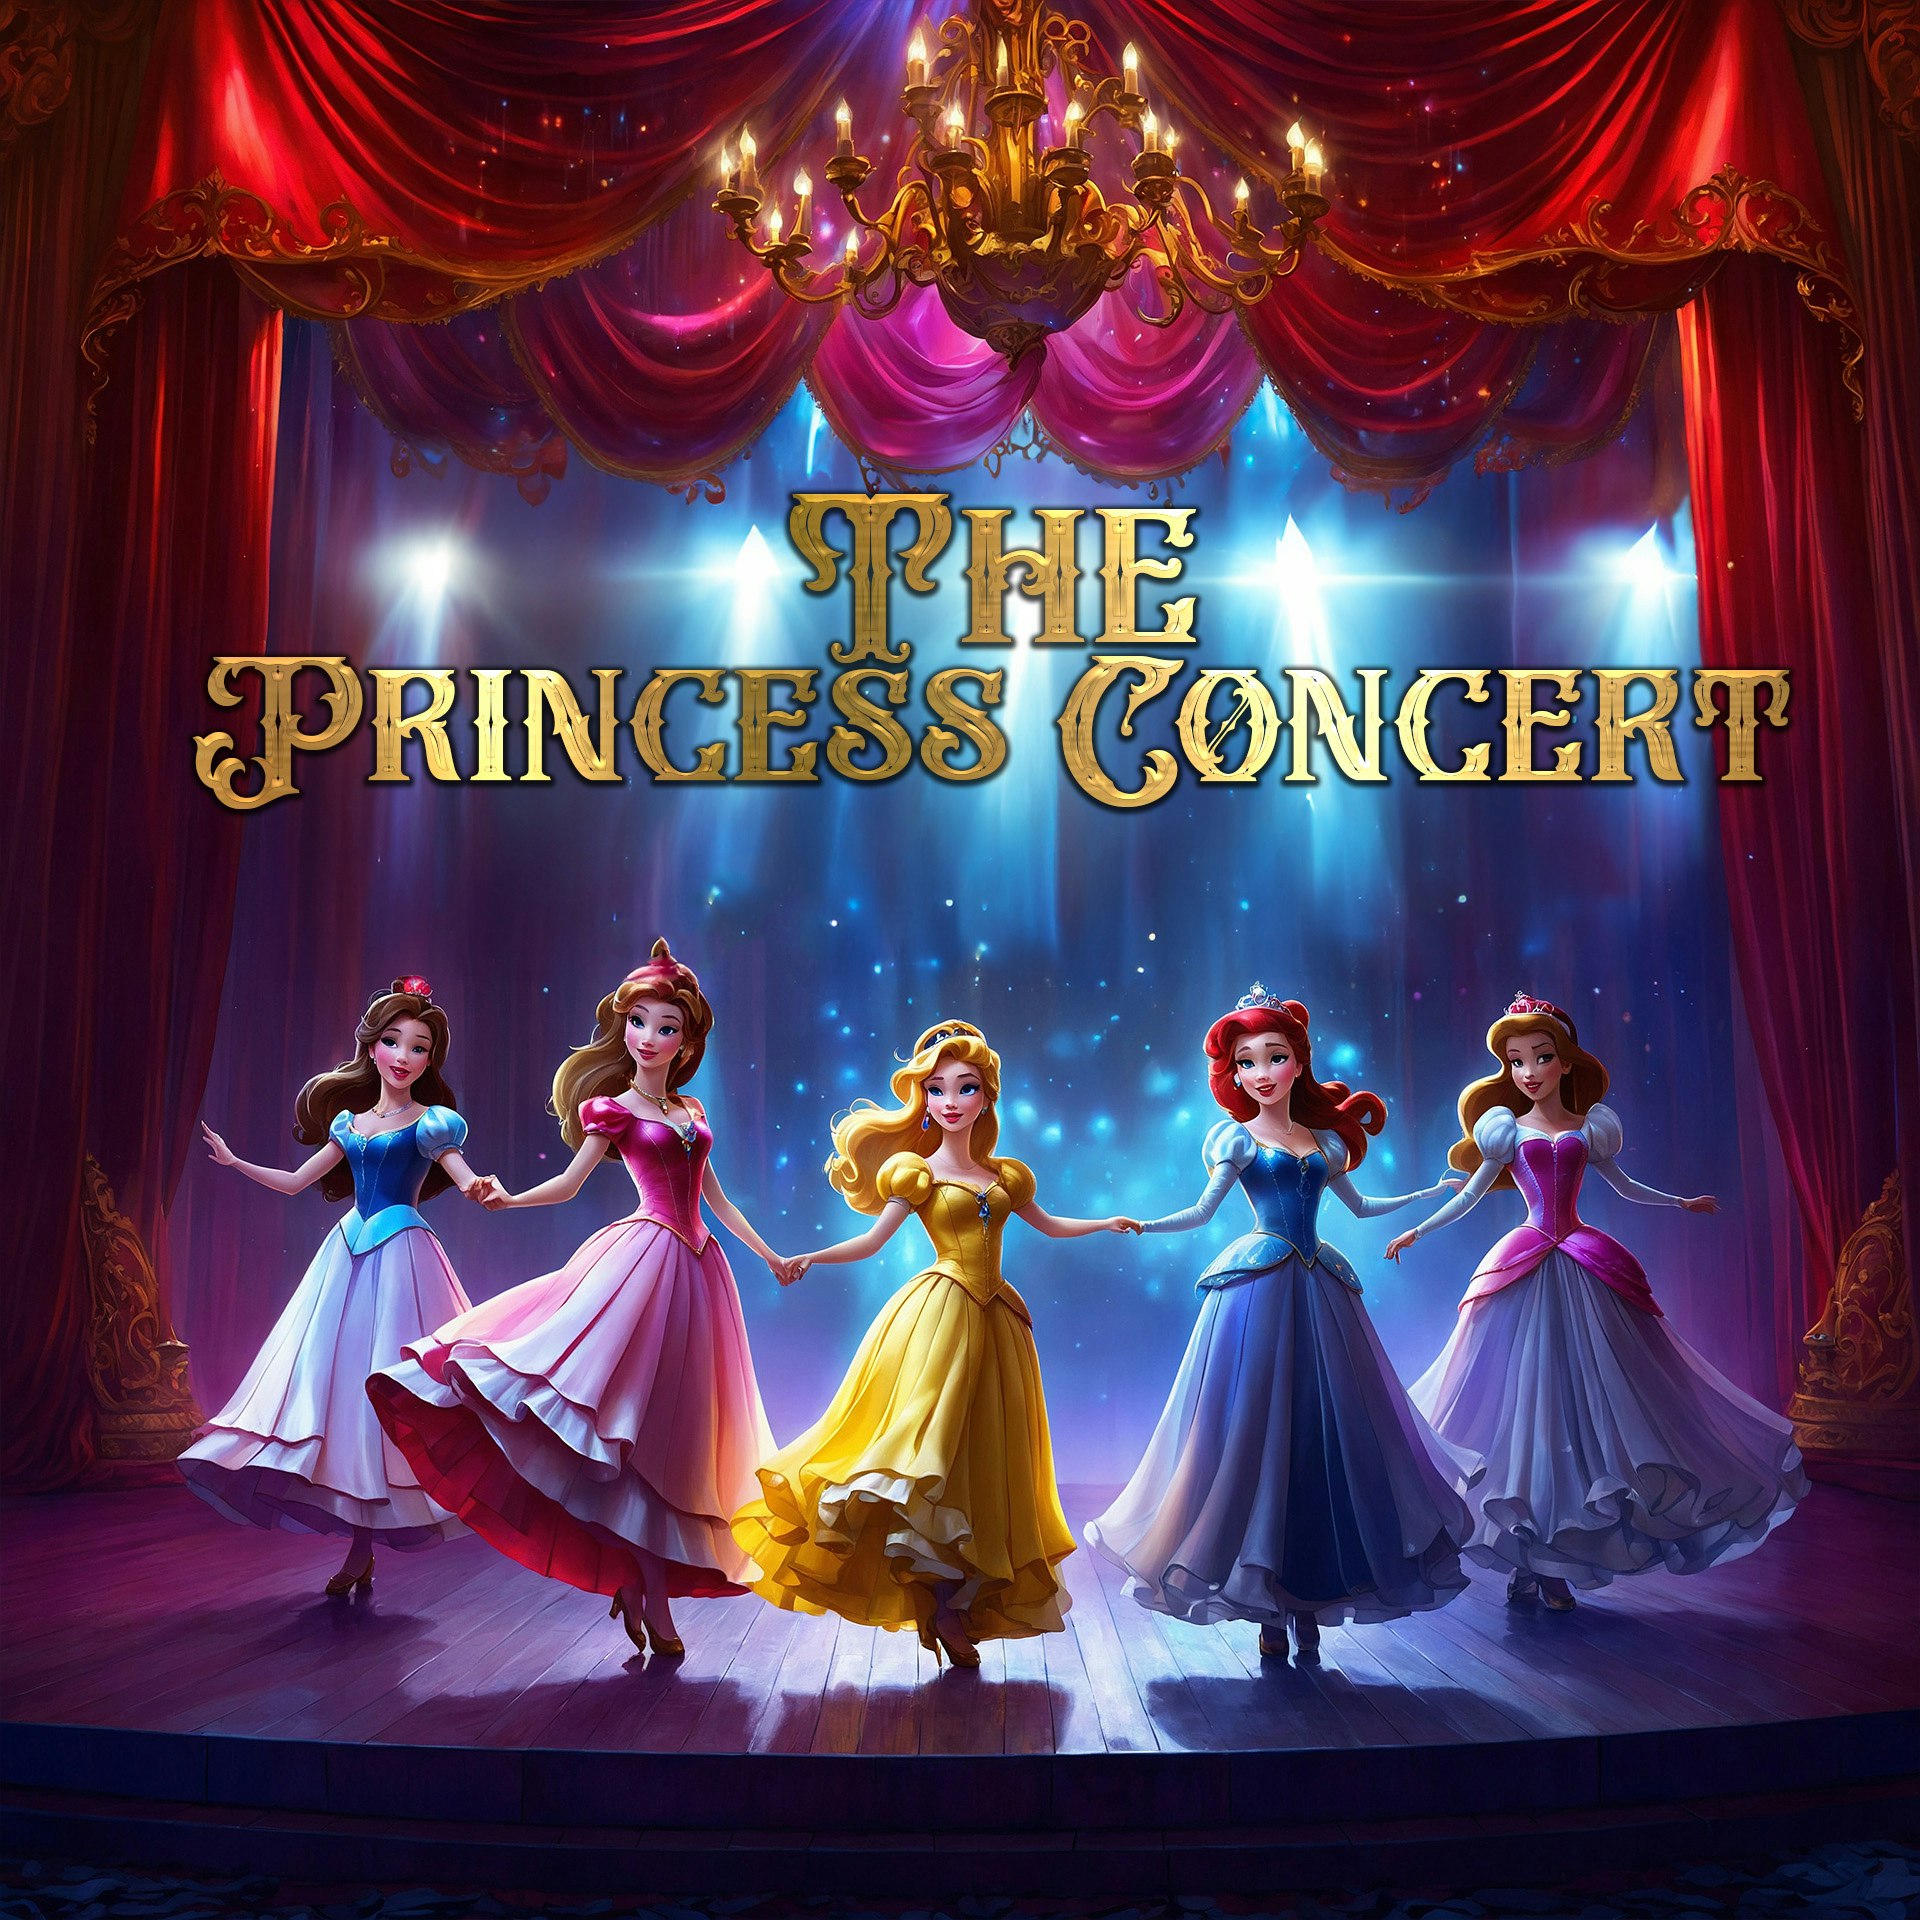 Princess Concert Comes To Barnsley